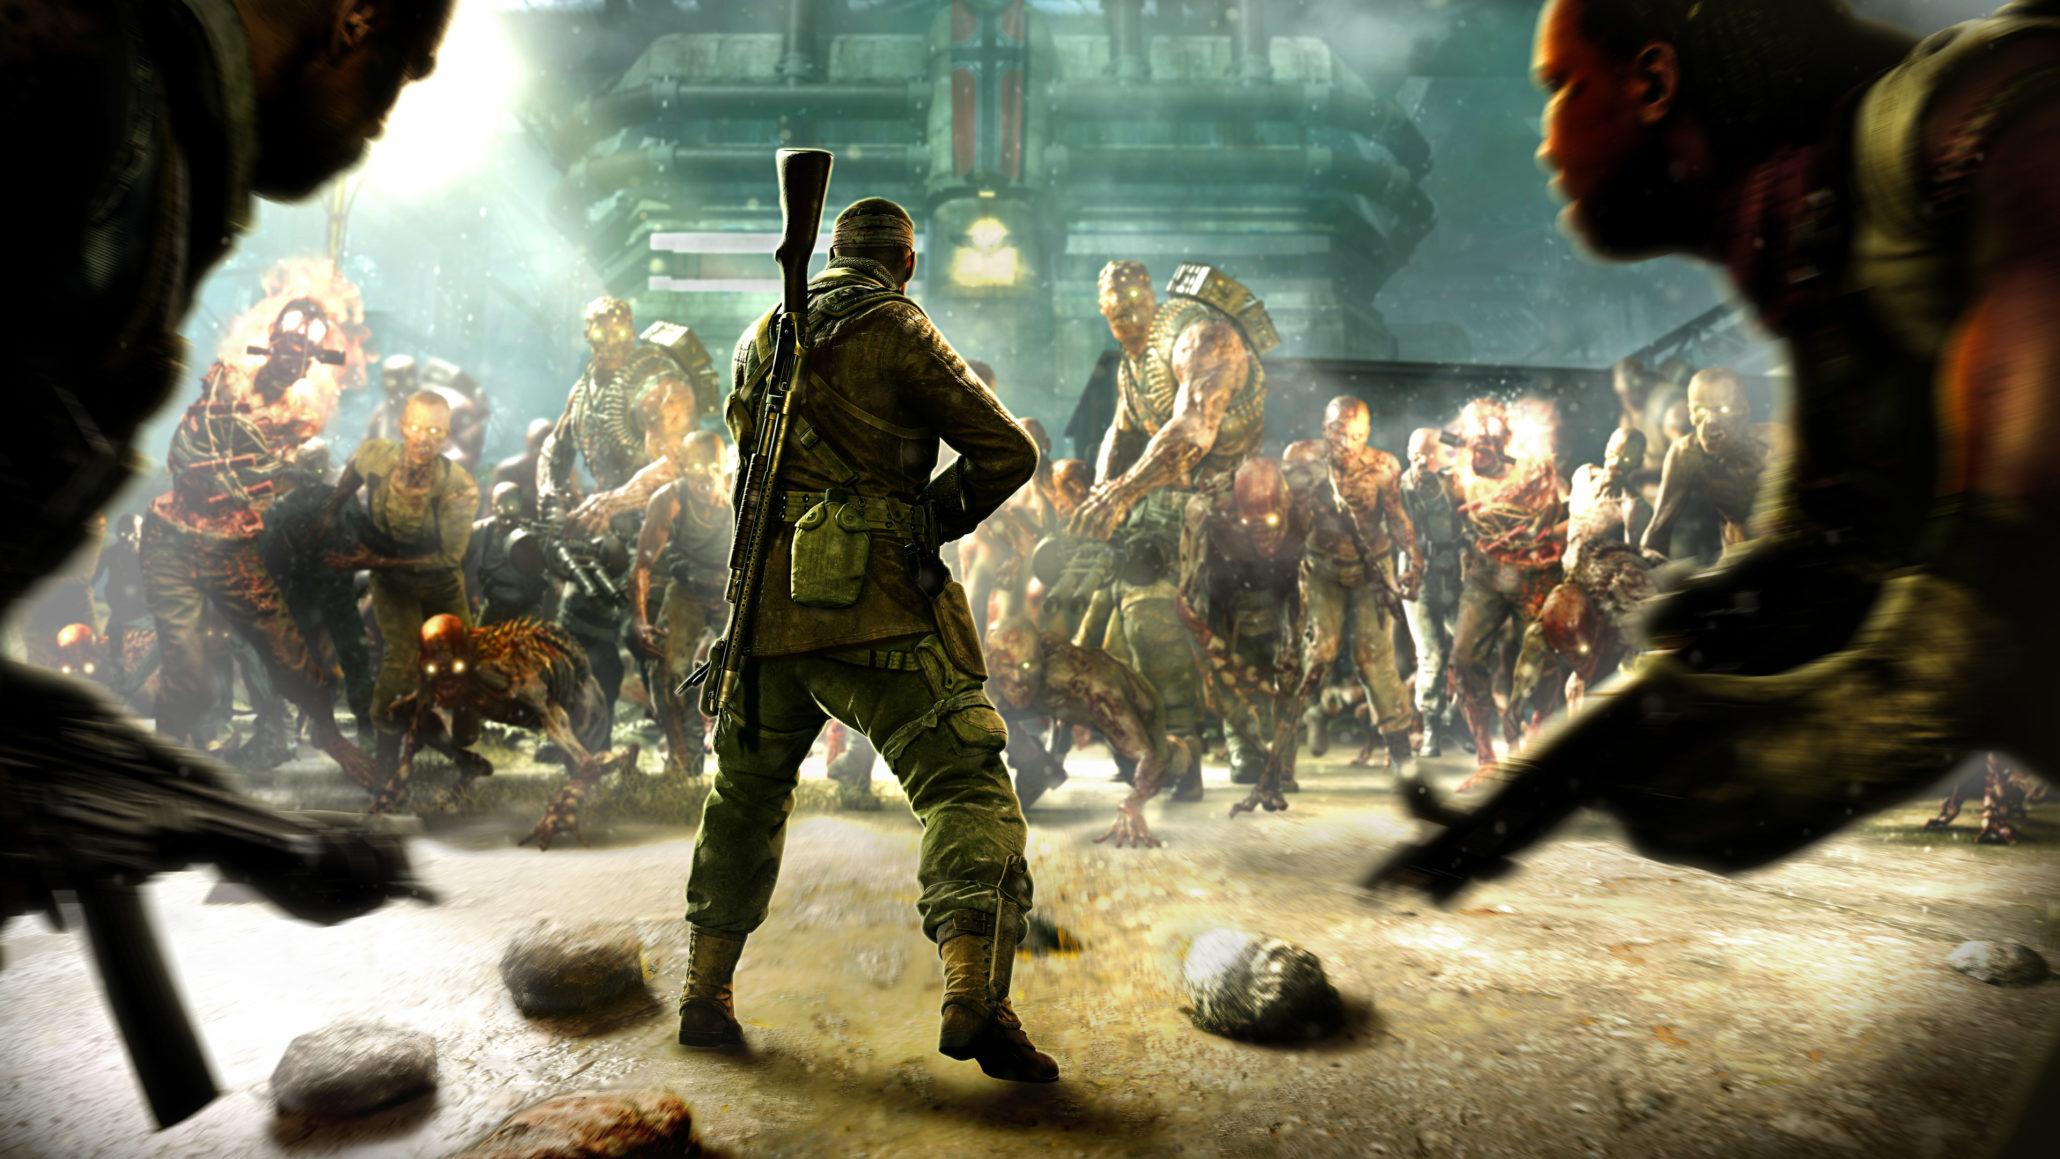 Xuất Hiện Game Bắn Zombies Mới Cực Đỉnh, Co-Op 4 Người Như Left 4 Dead